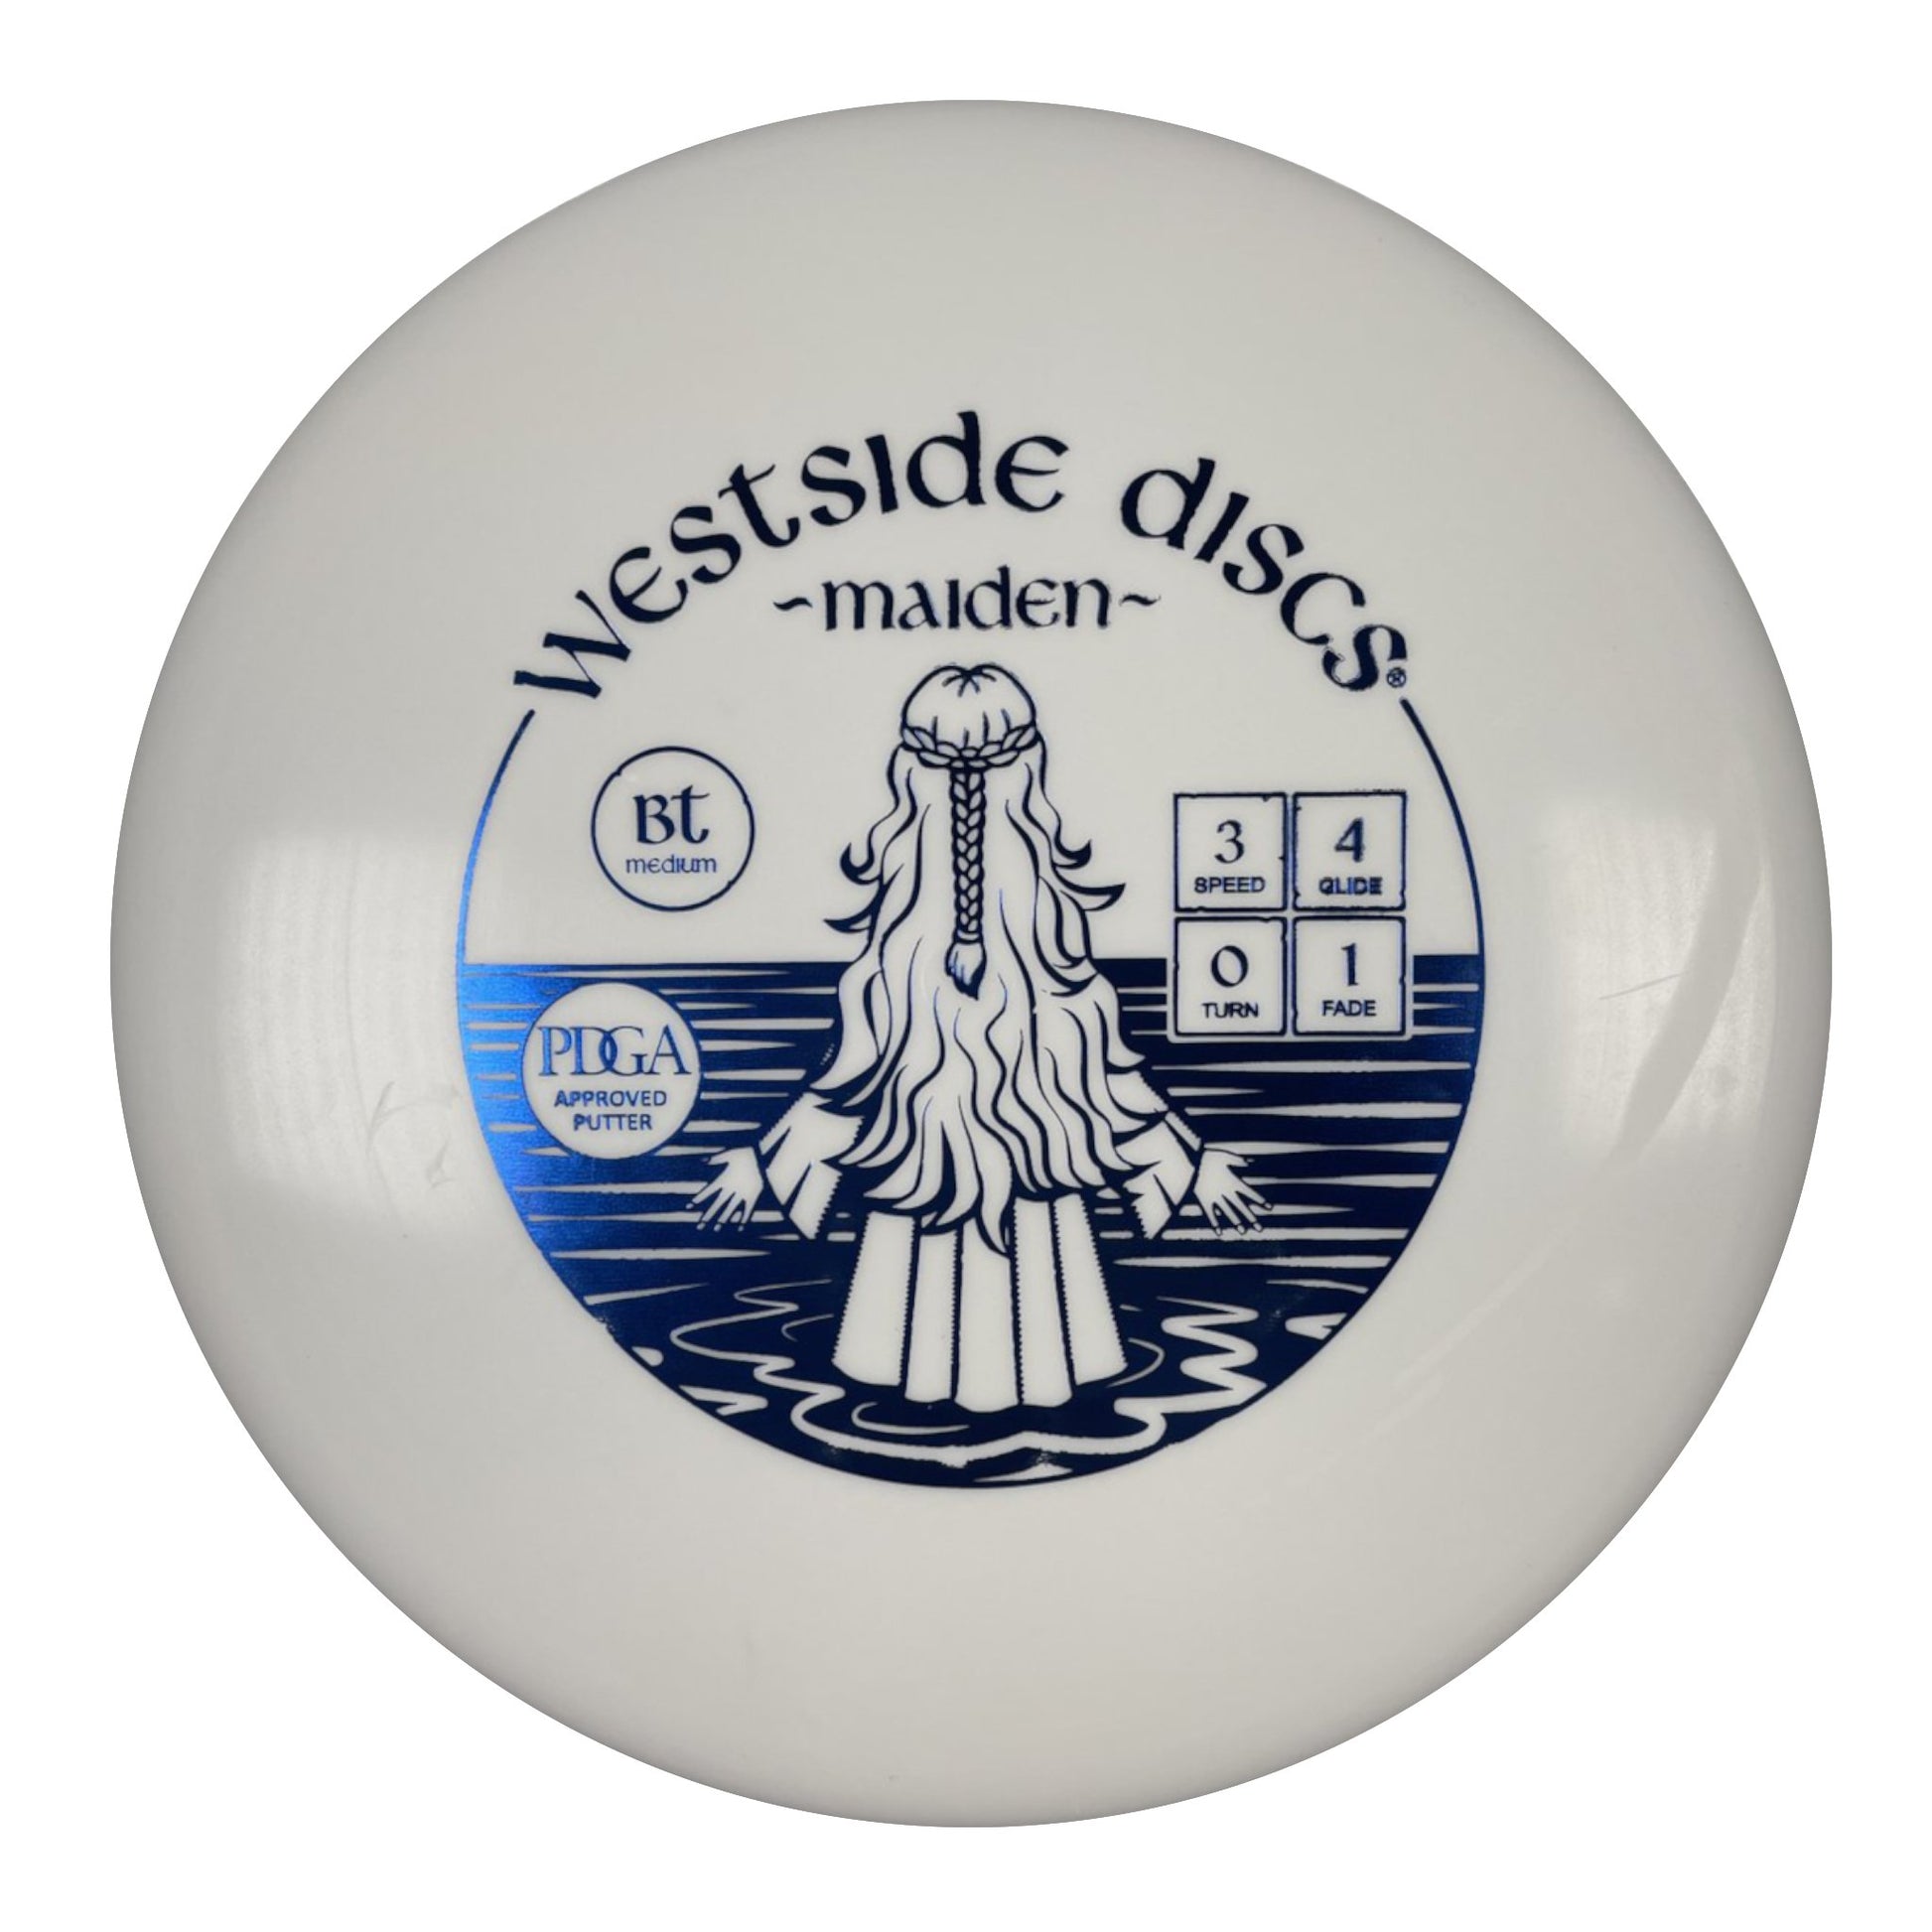 Westside Discs Maiden | BT Medium | White/Blue 173g Disc Golf